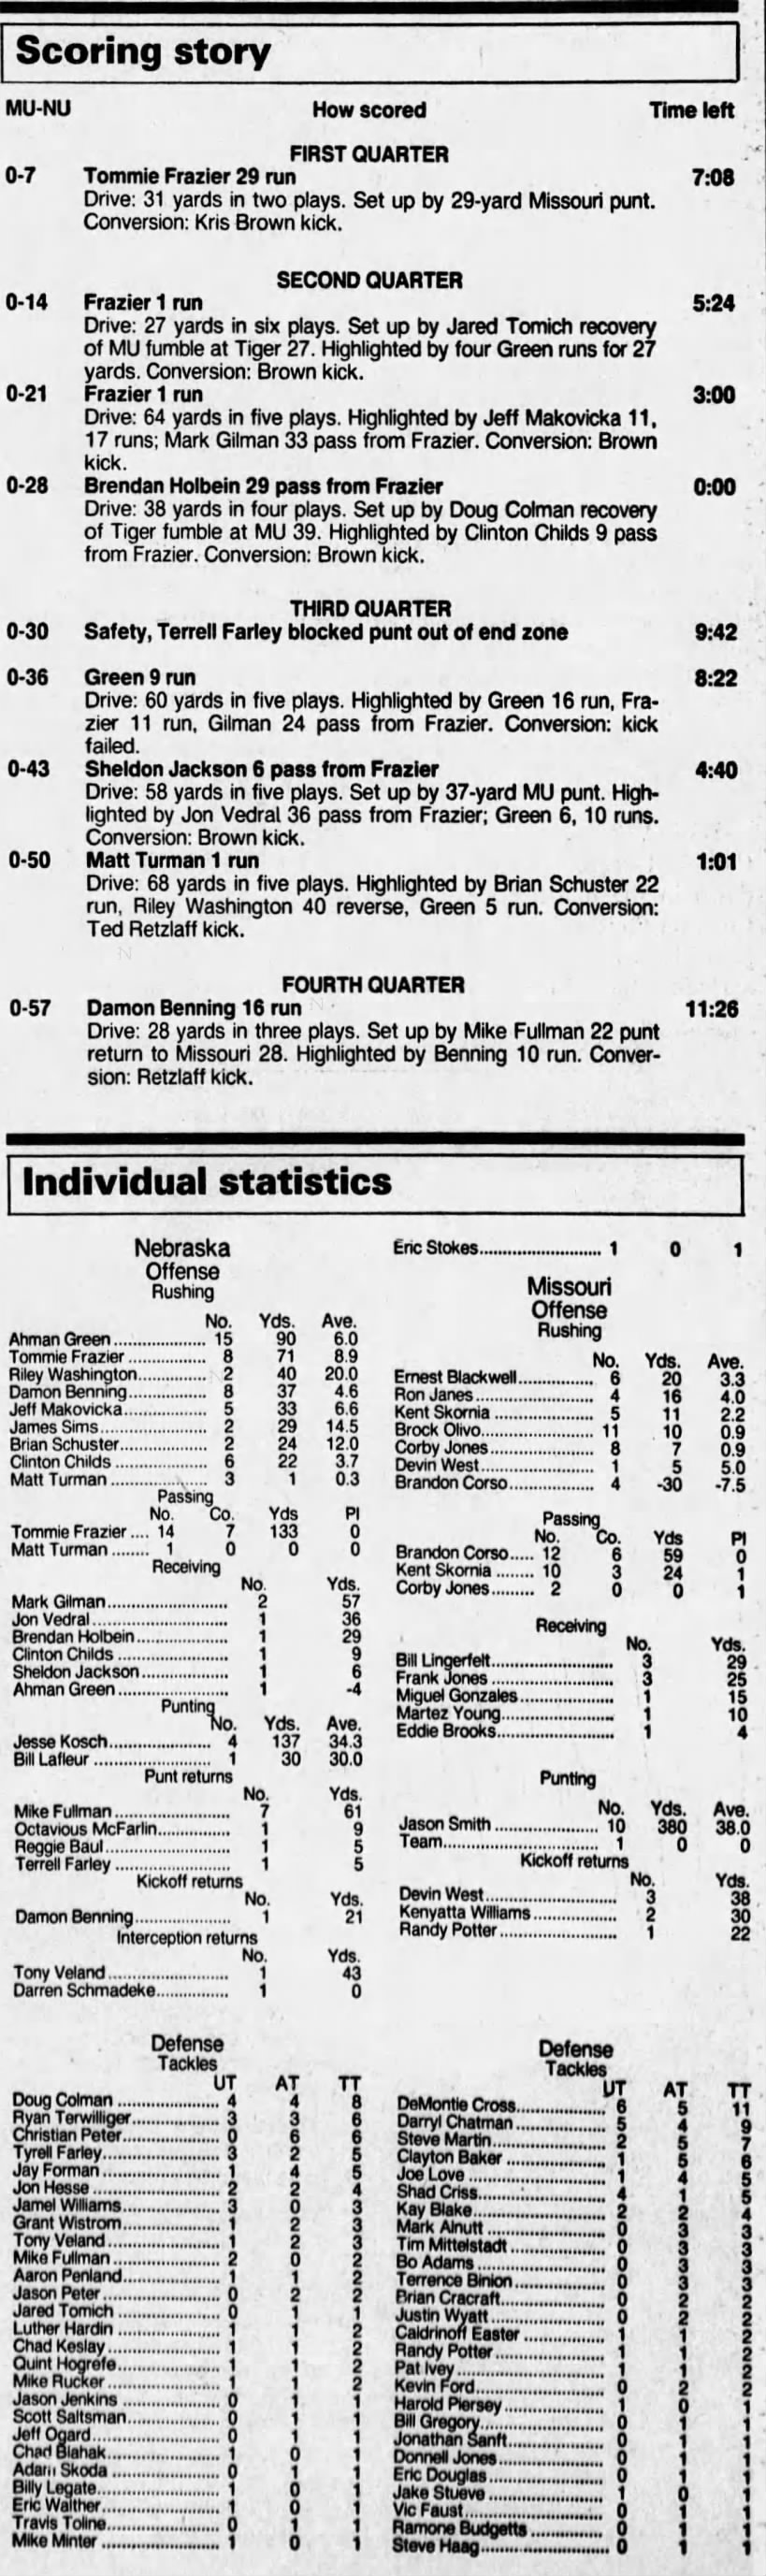 1995 Nebraska-Missouri scoring summary